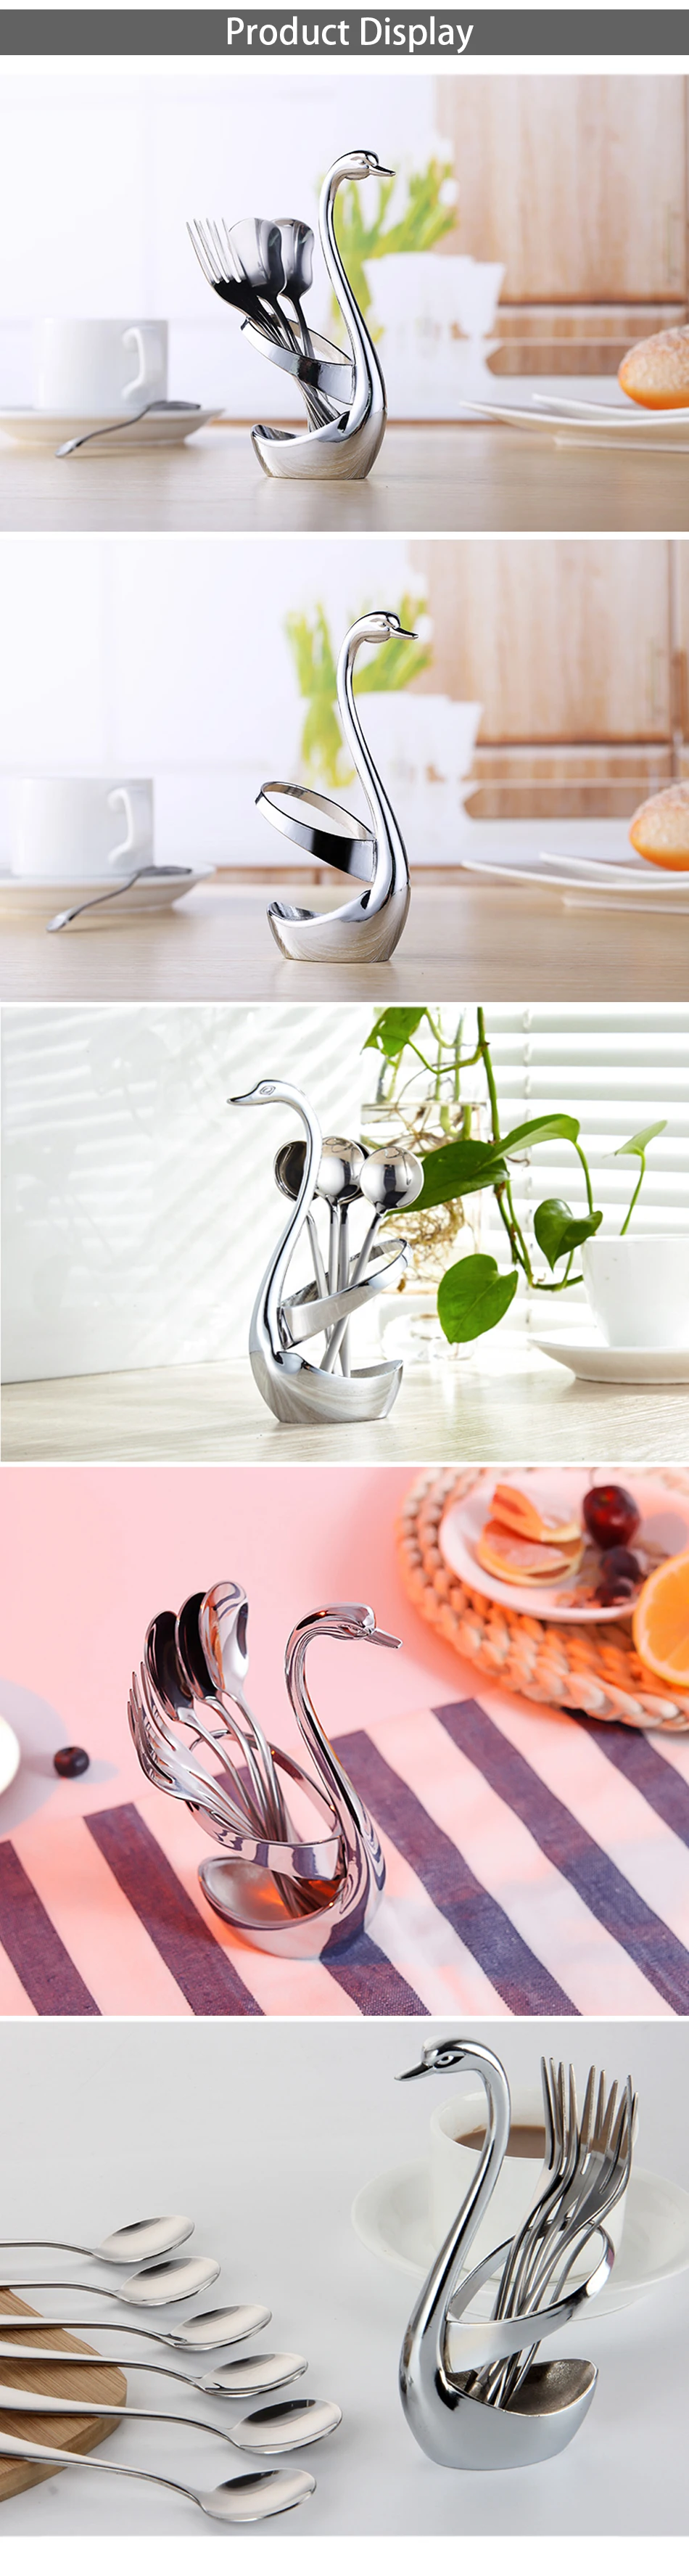 TTLIFE креативные переносные фрукты/Десертные столовые приборы из нержавеющей стали, набор тортов/комплект кофейных ложек набор столовой посуды для кухни